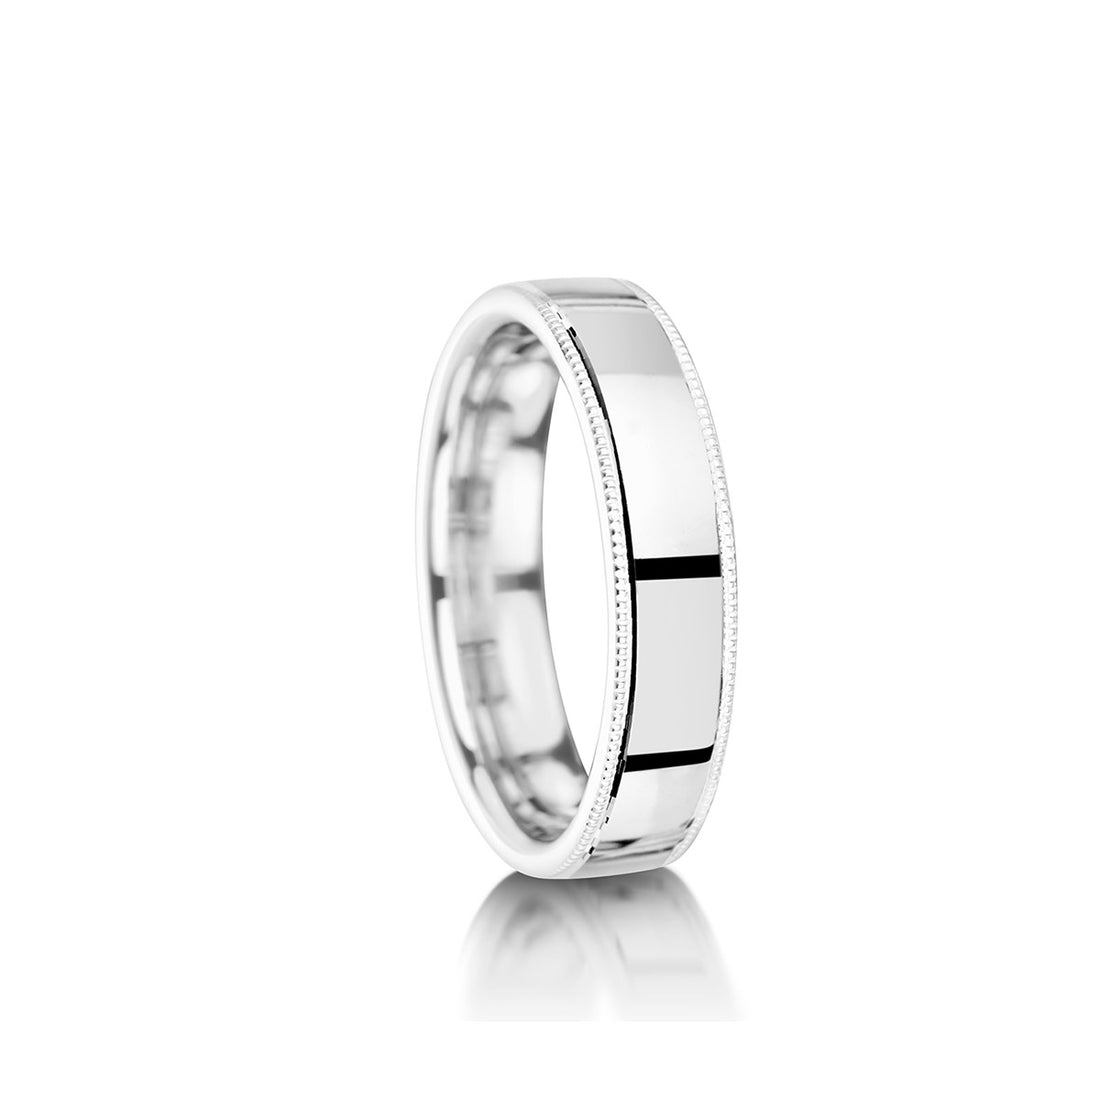 5mm Polished Gents Wedding Ring – MWR3